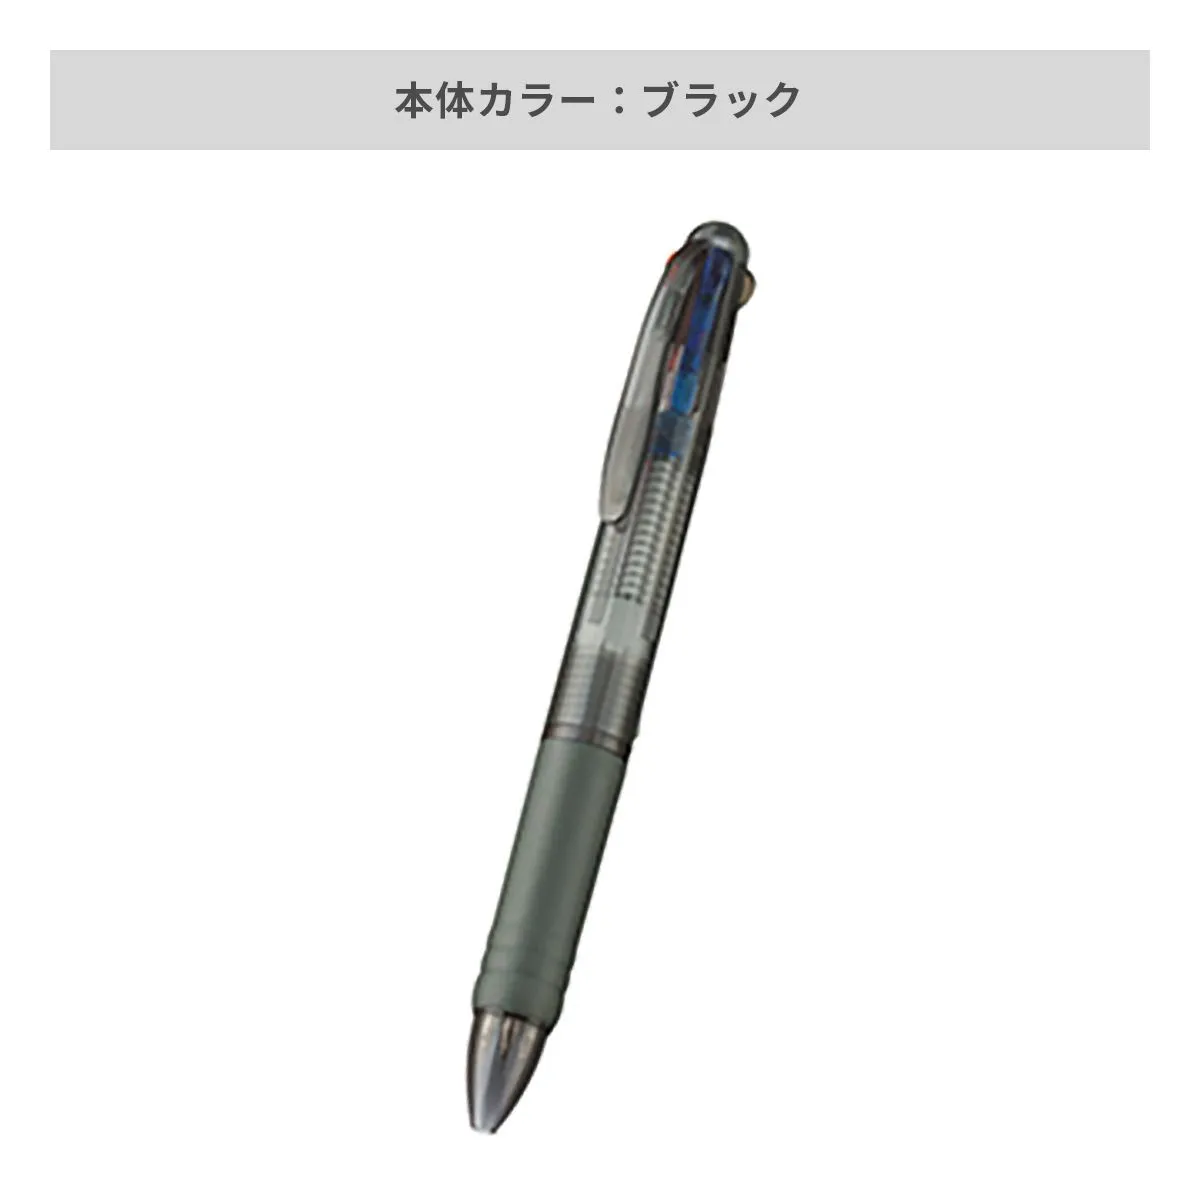 3色 プラスワン ボールペン【名入れボールペン / インクジェット印刷】 画像4